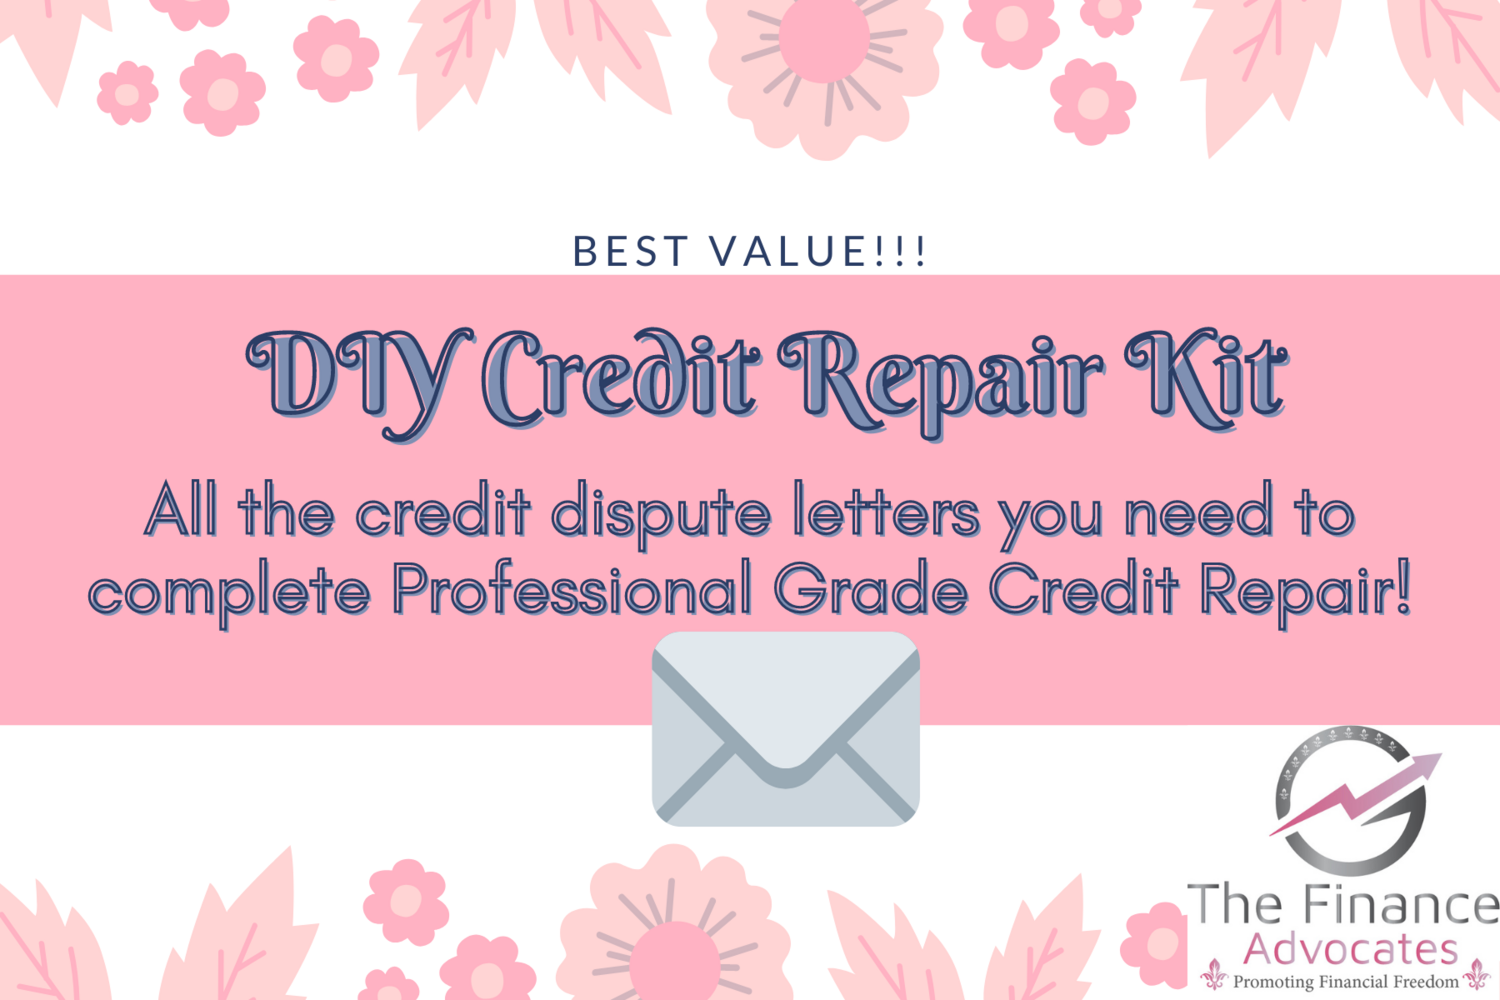 Complete DIY Credit Repair Kit